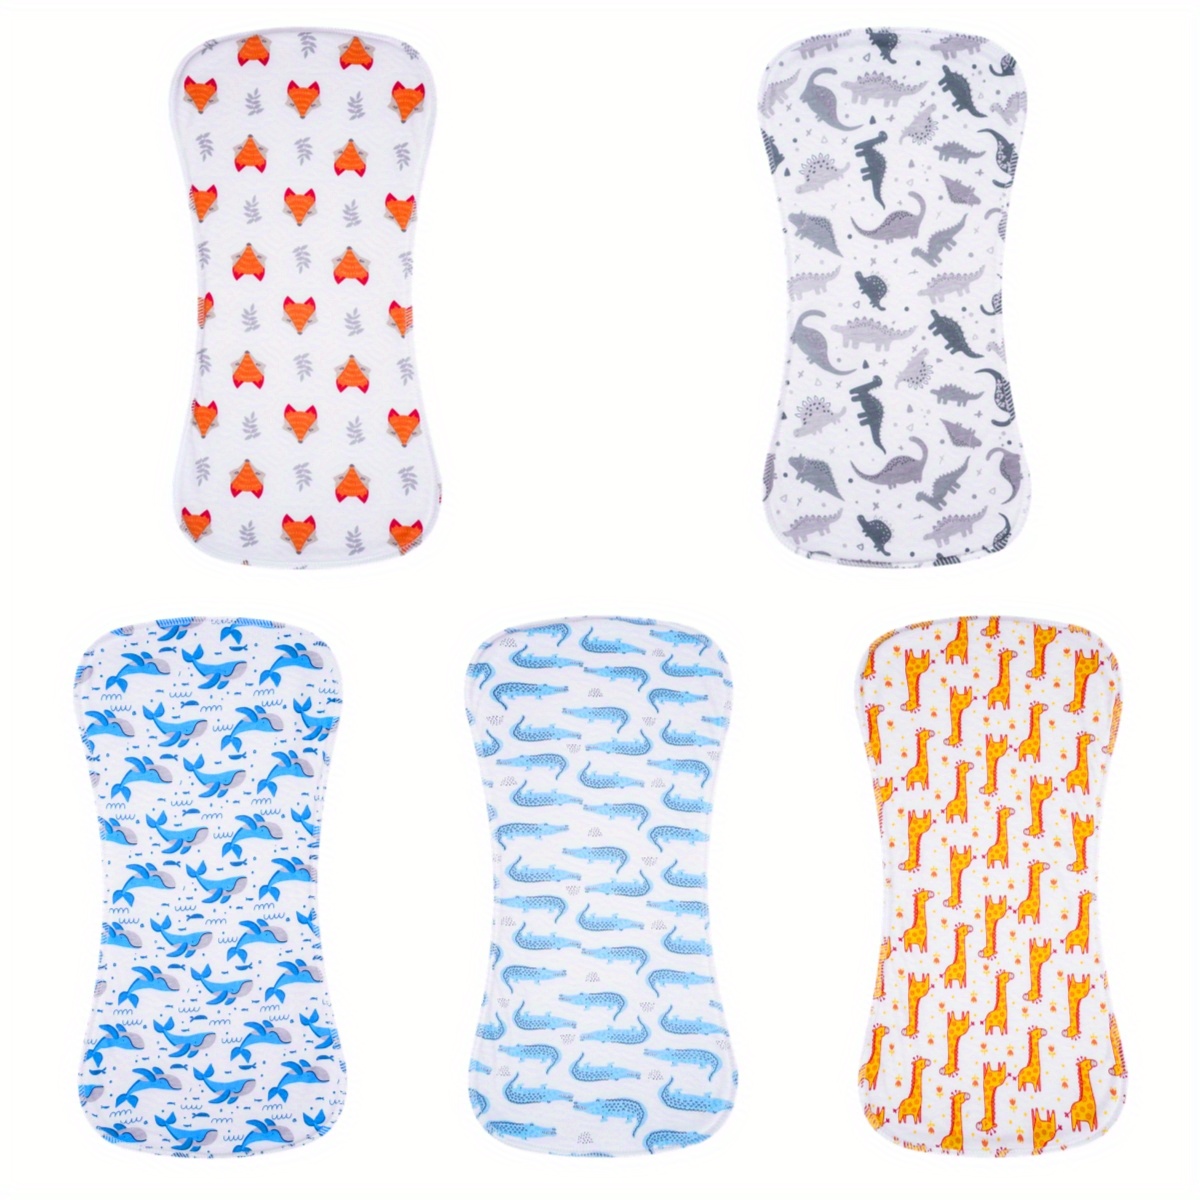 Toallas absorbentes de algodón, AIBEDILA, producto para bebés recién nacidos  - Abut® Sitio Oficial